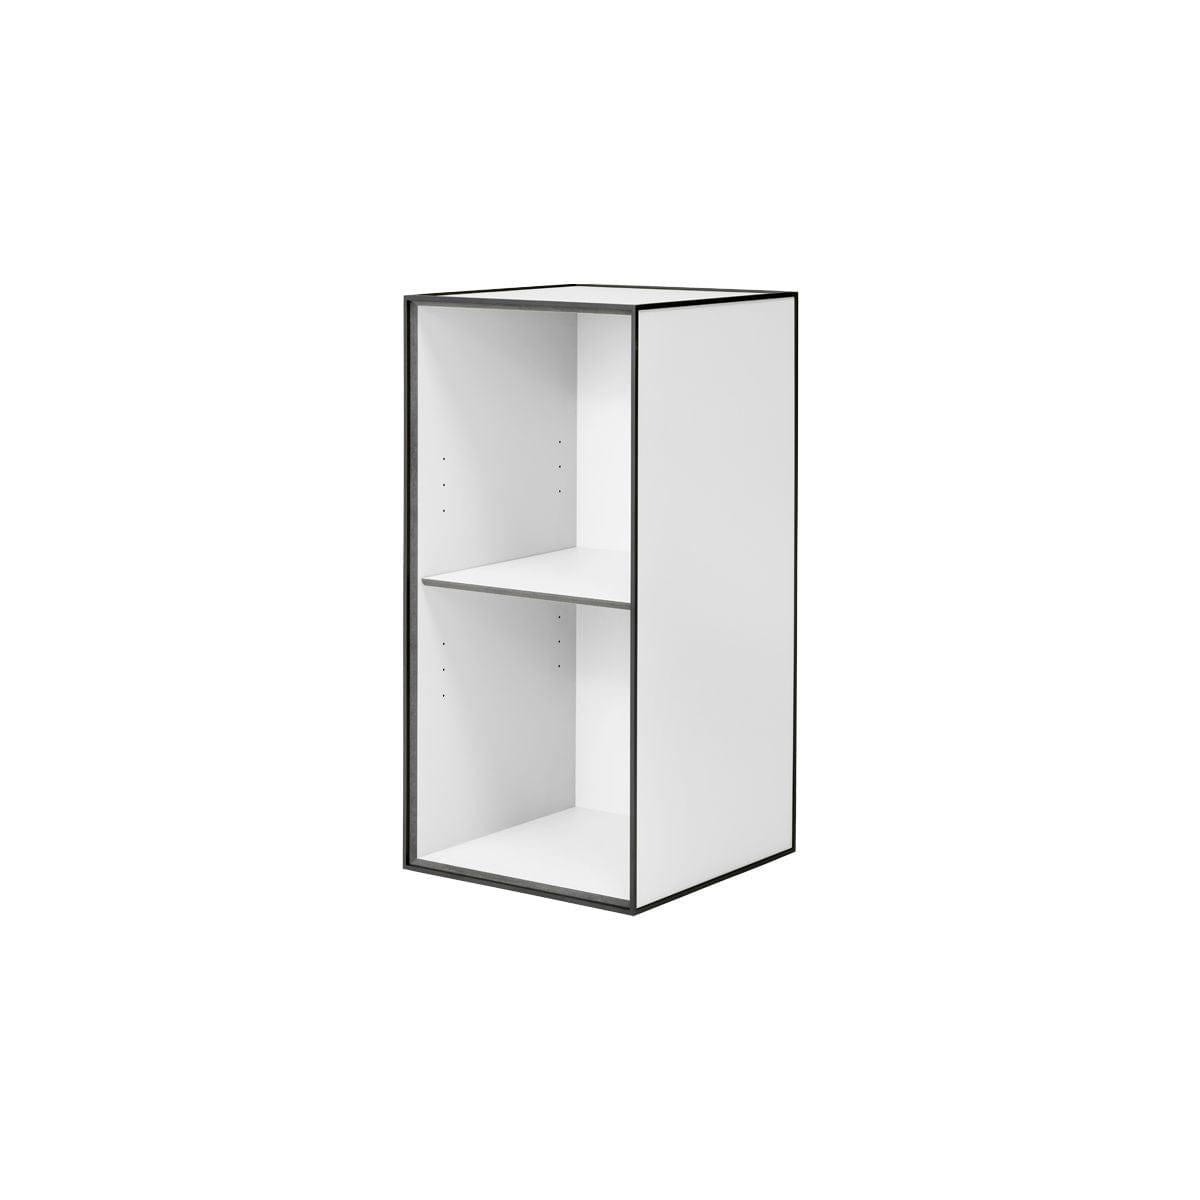 Audo Copenhagen Frame 70 With 2 Shelves, White